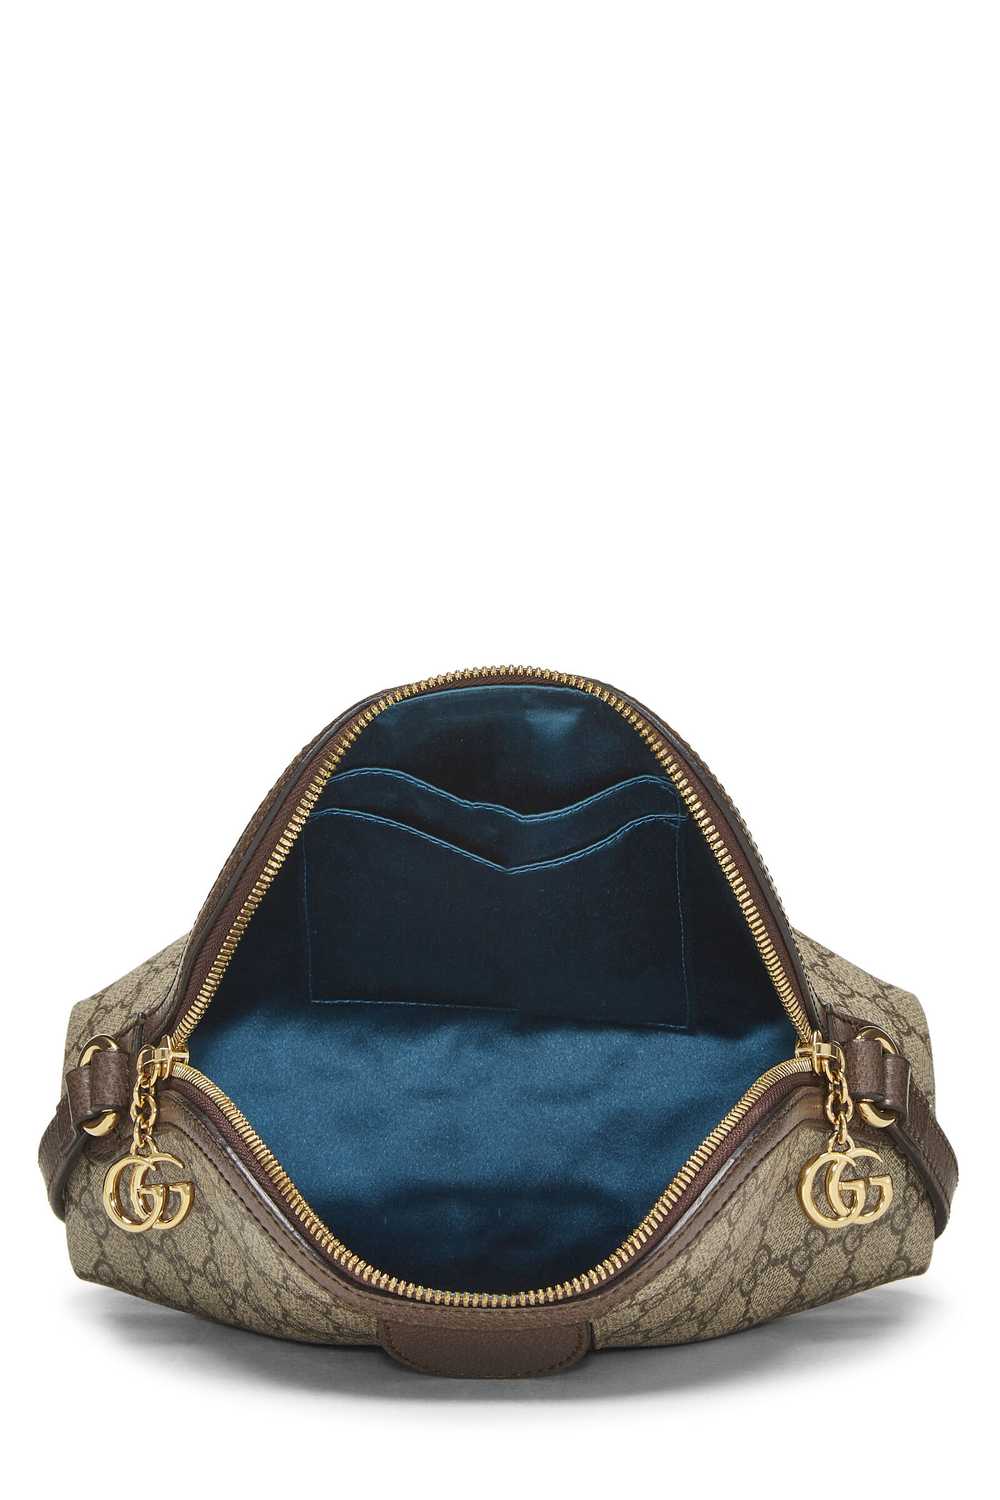 Original GG Supreme Canvas Ophidia Shoulder Bag S… - image 6